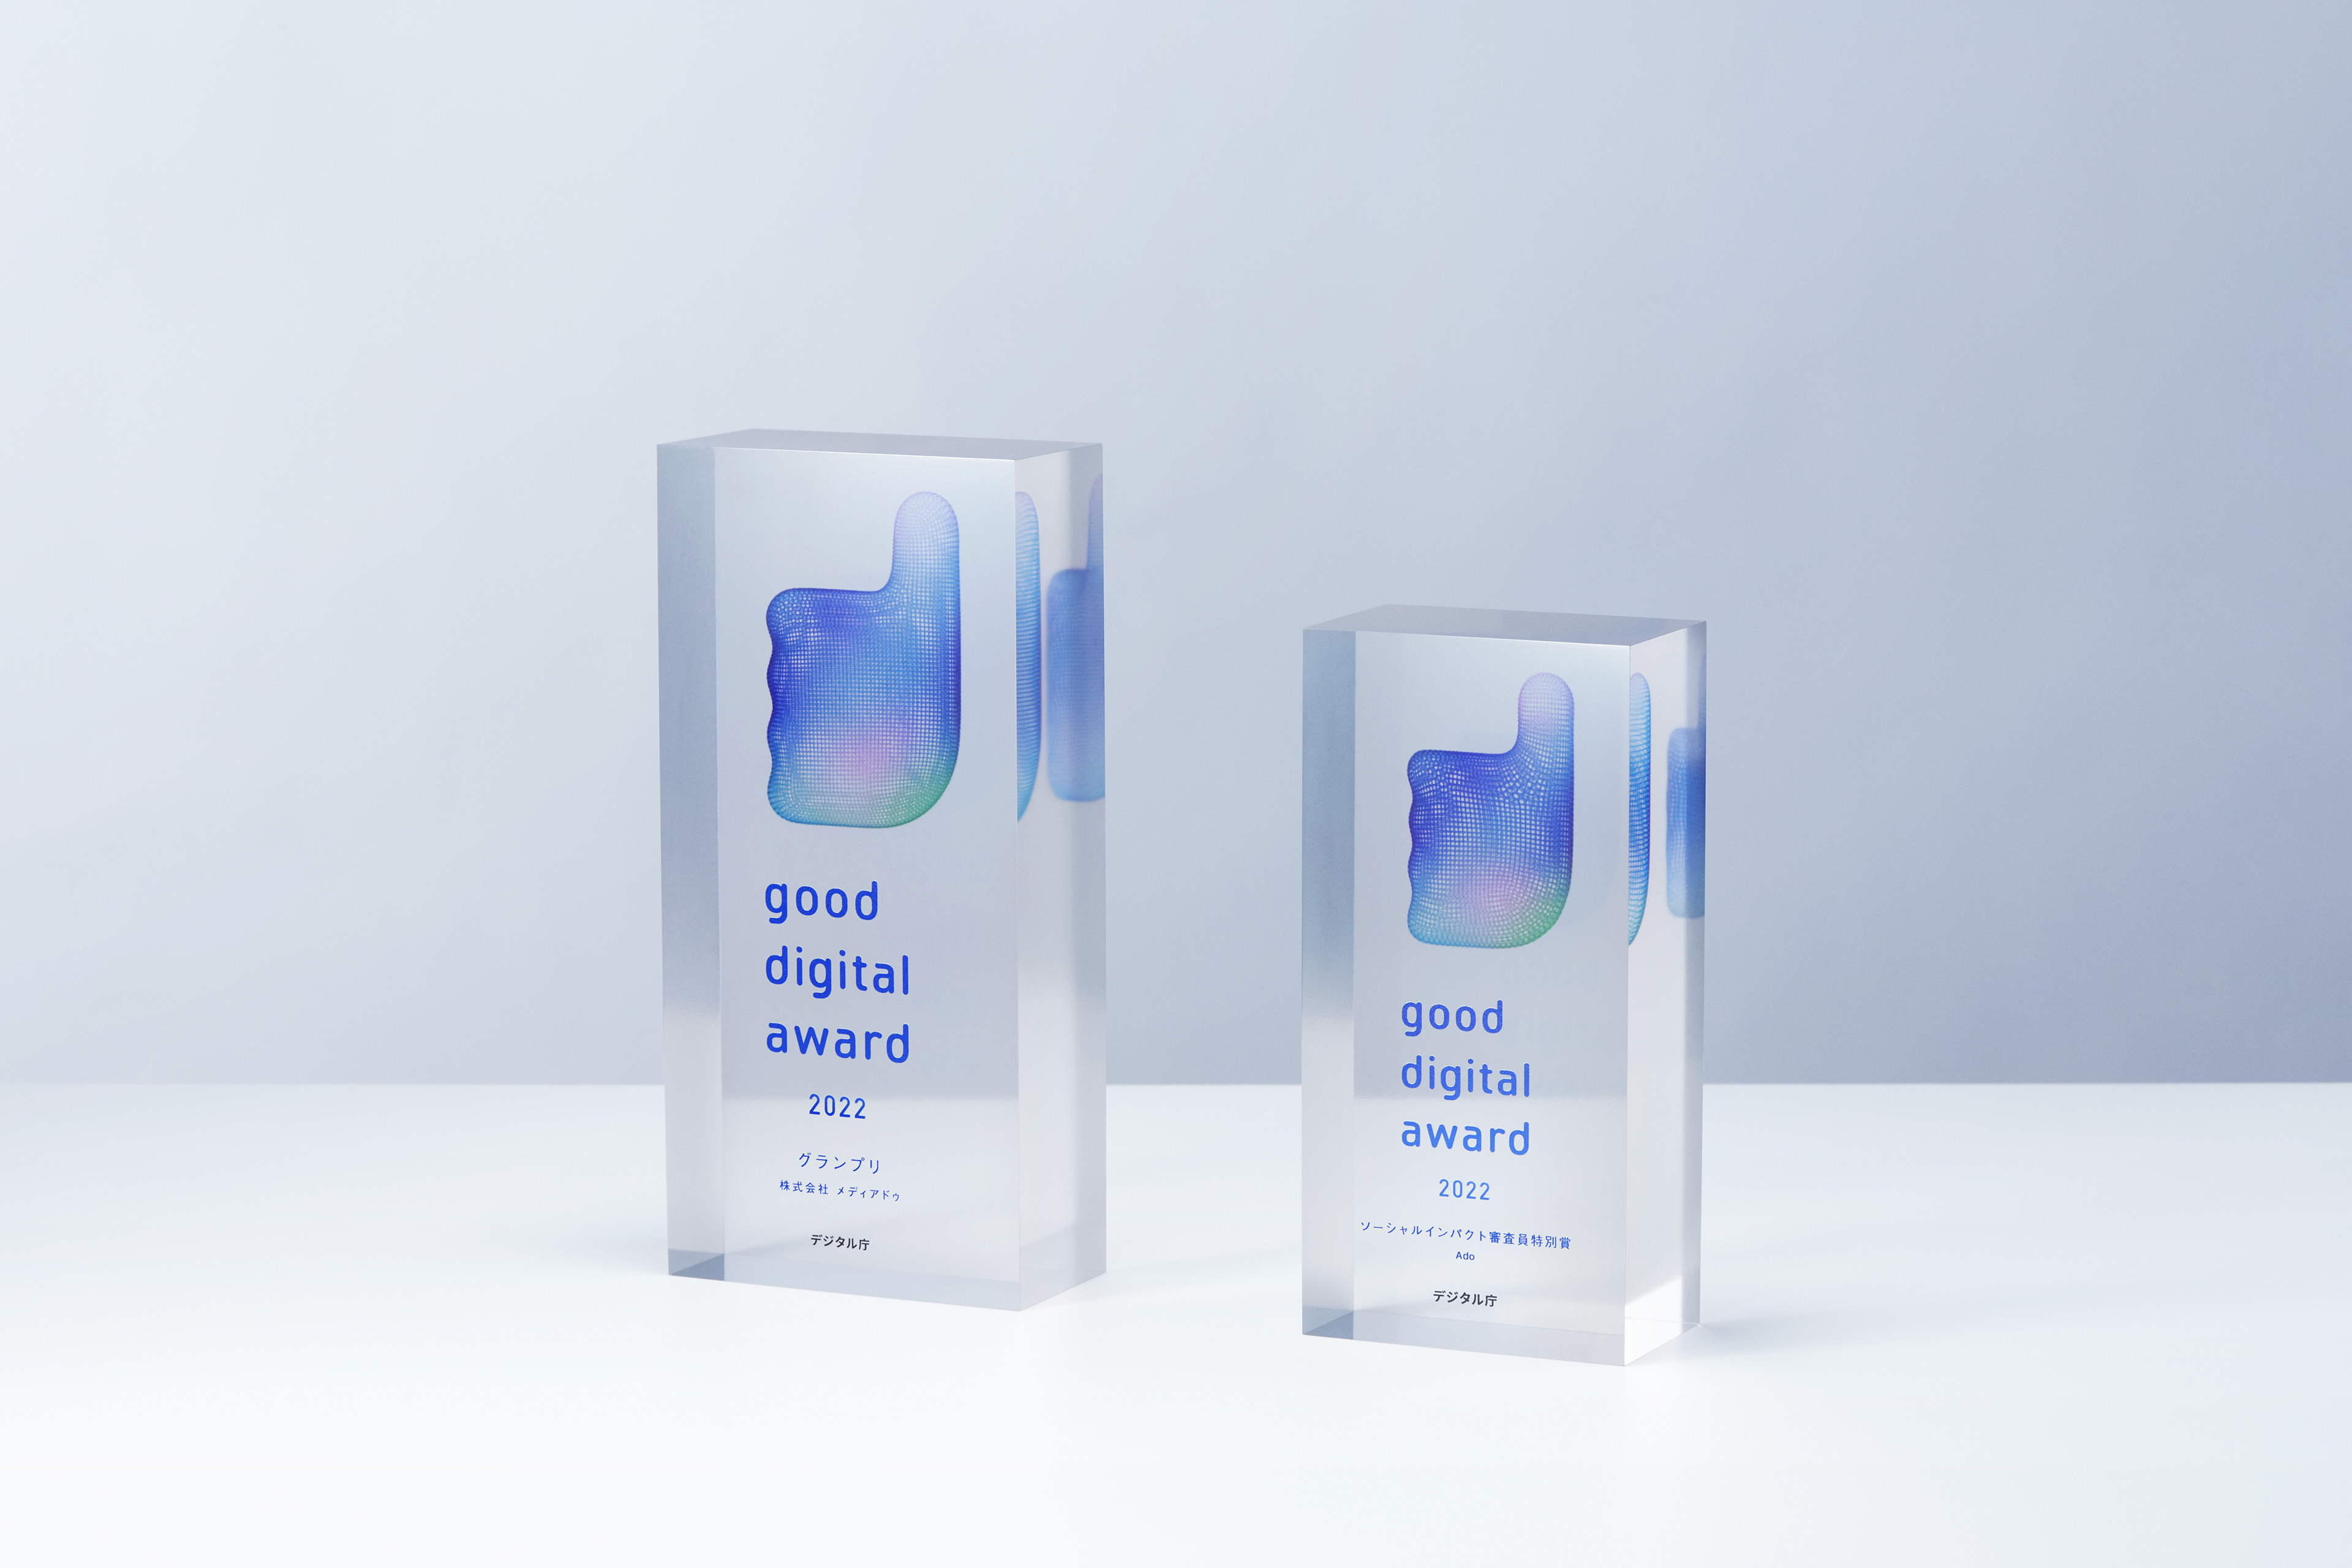 good digital awardのトロフィー2つの3DCGイメージ。トロフィーは透明な直方体の中心からやや上の箇所にgood digital awardのロゴマークである親指を抽象化したマークが埋め込まれている。左側の直方体の表面にはgood digital award 2022グランプリ株式会社メディアドゥデジタル庁というテキストが7行になった状態で刻印されており、右側の直方体の表面にはgood digital award 2022ソーシャルインパクト審査員特別賞Adoデジタル庁というテキストが単語ごとに改行されて7行になった状態で刻印されている。大きさの違う2つのトロフィーは横に並べられていて、正面よりやや斜め方向から見たアングルのCGになっている。